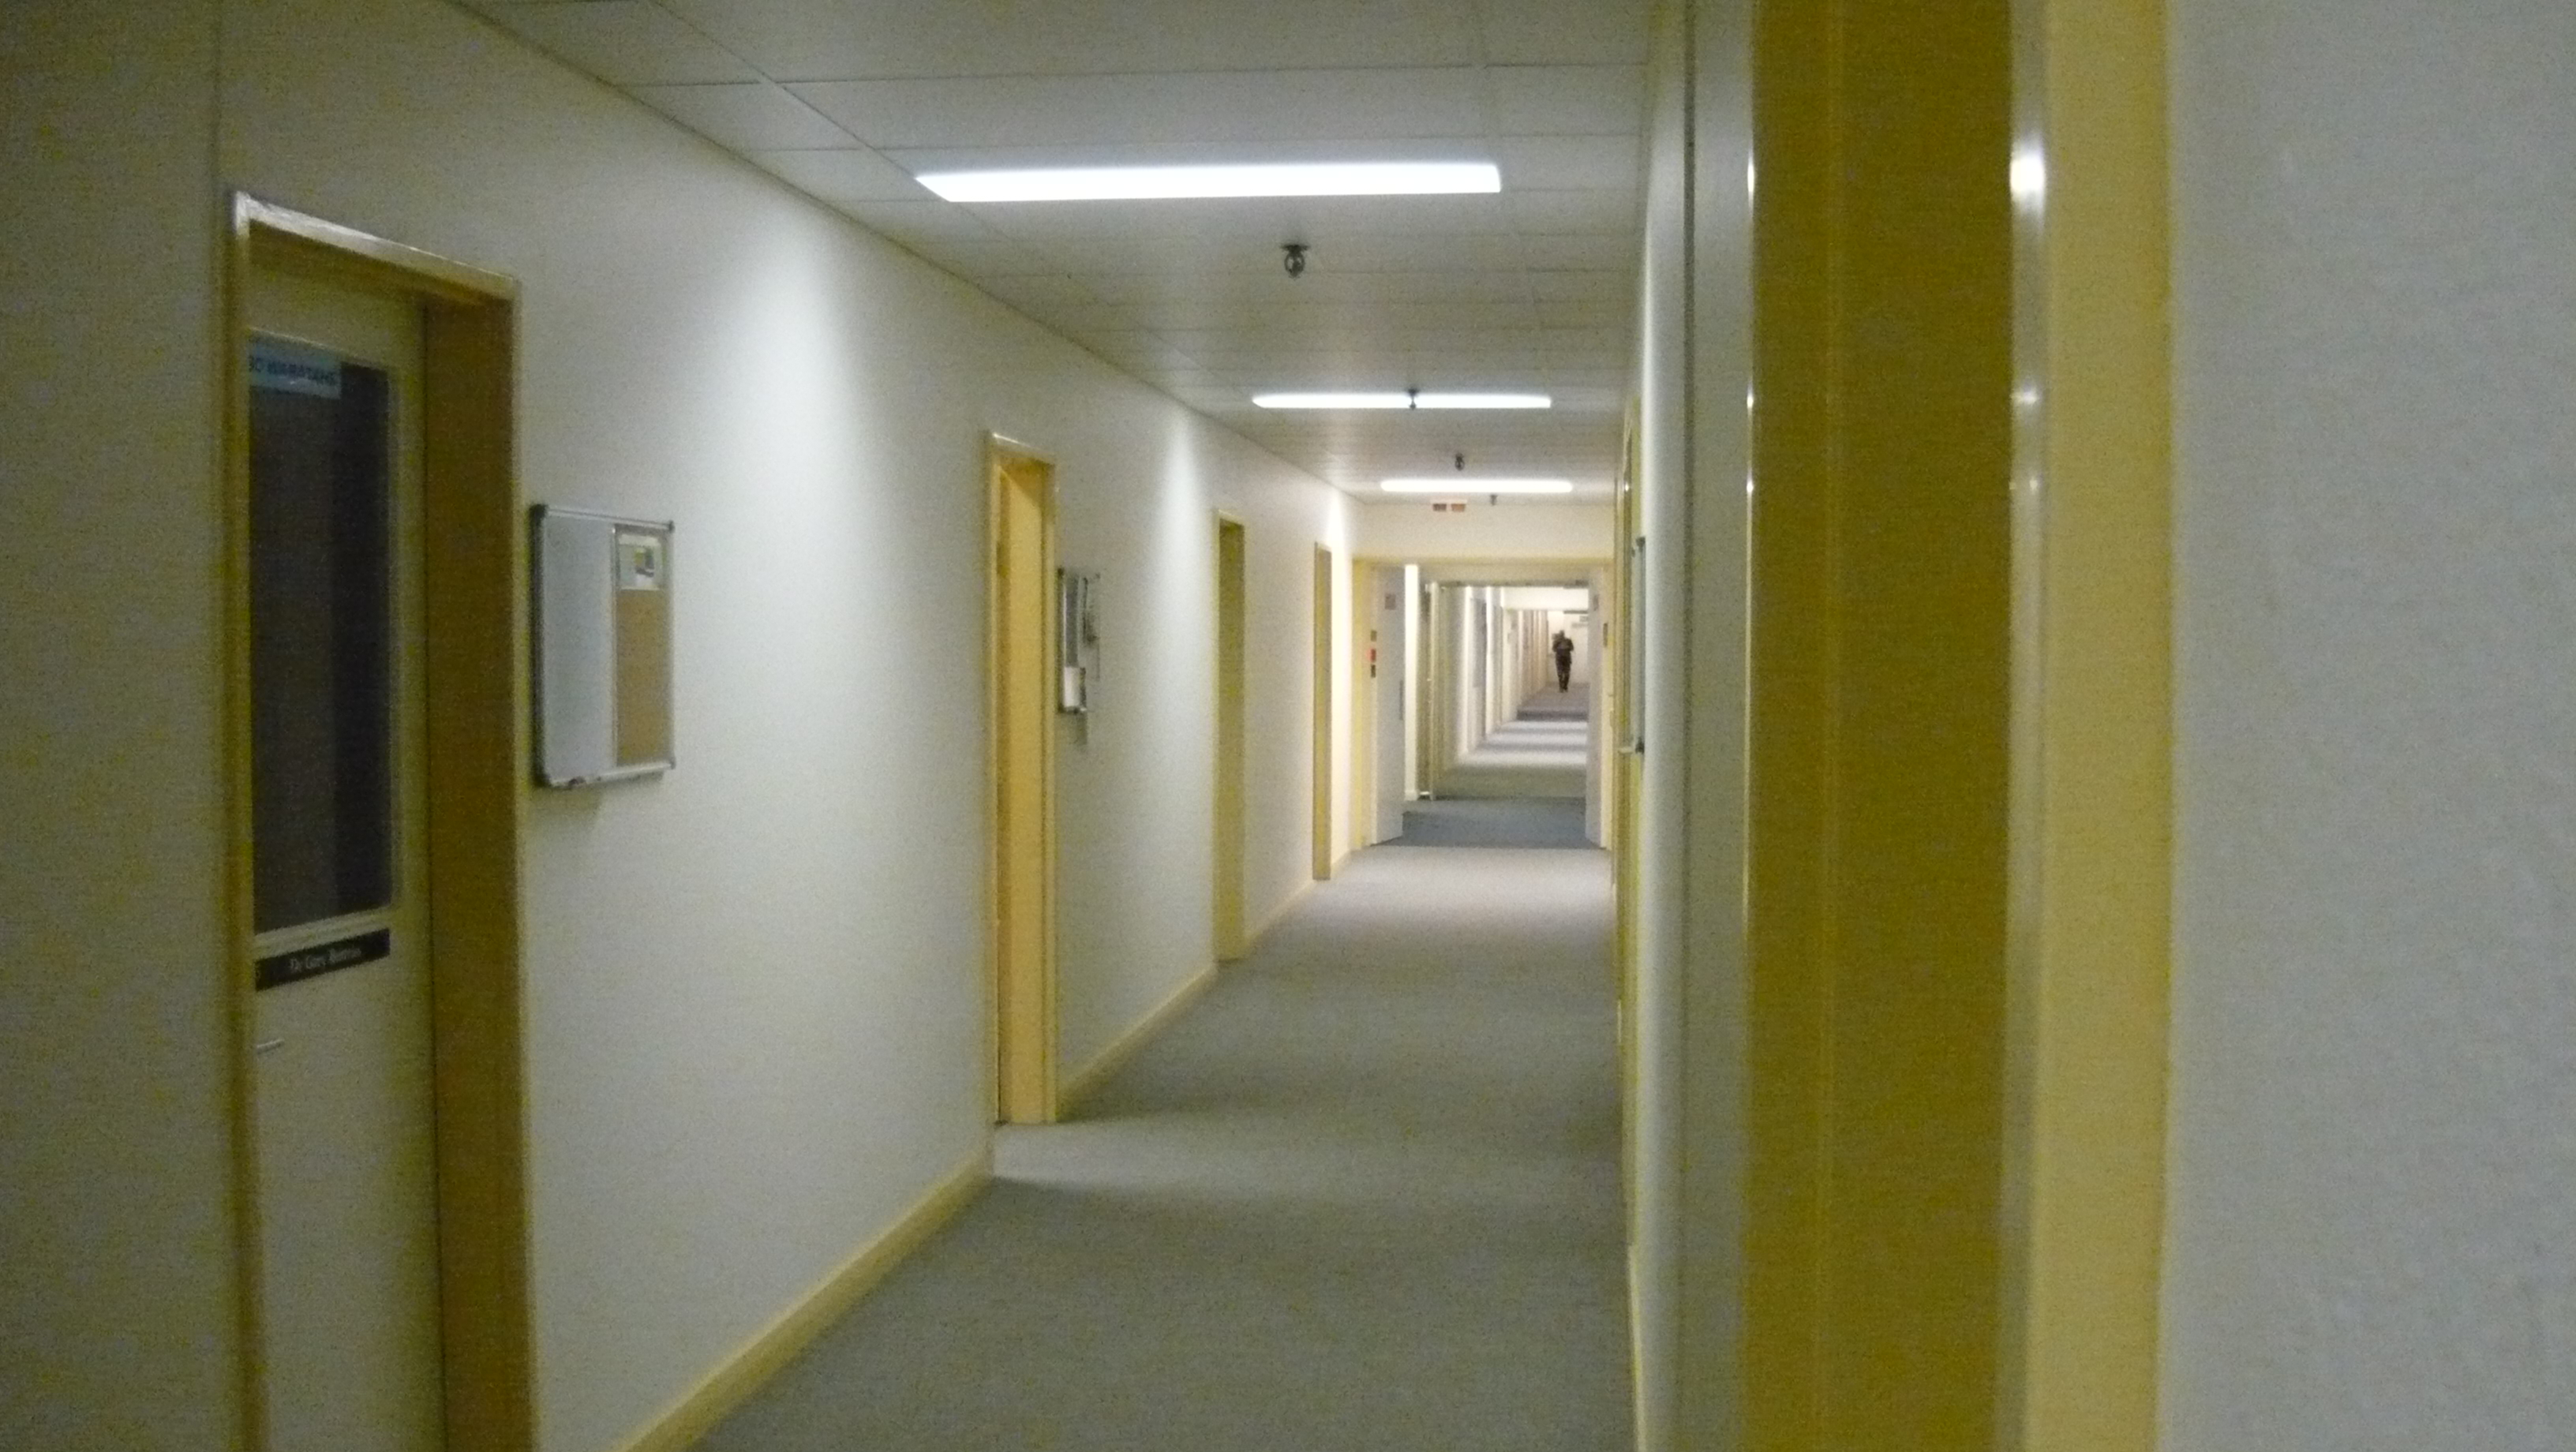 File:Infinite corridor in Copland Building, ANU Canberra (3658631797 ...